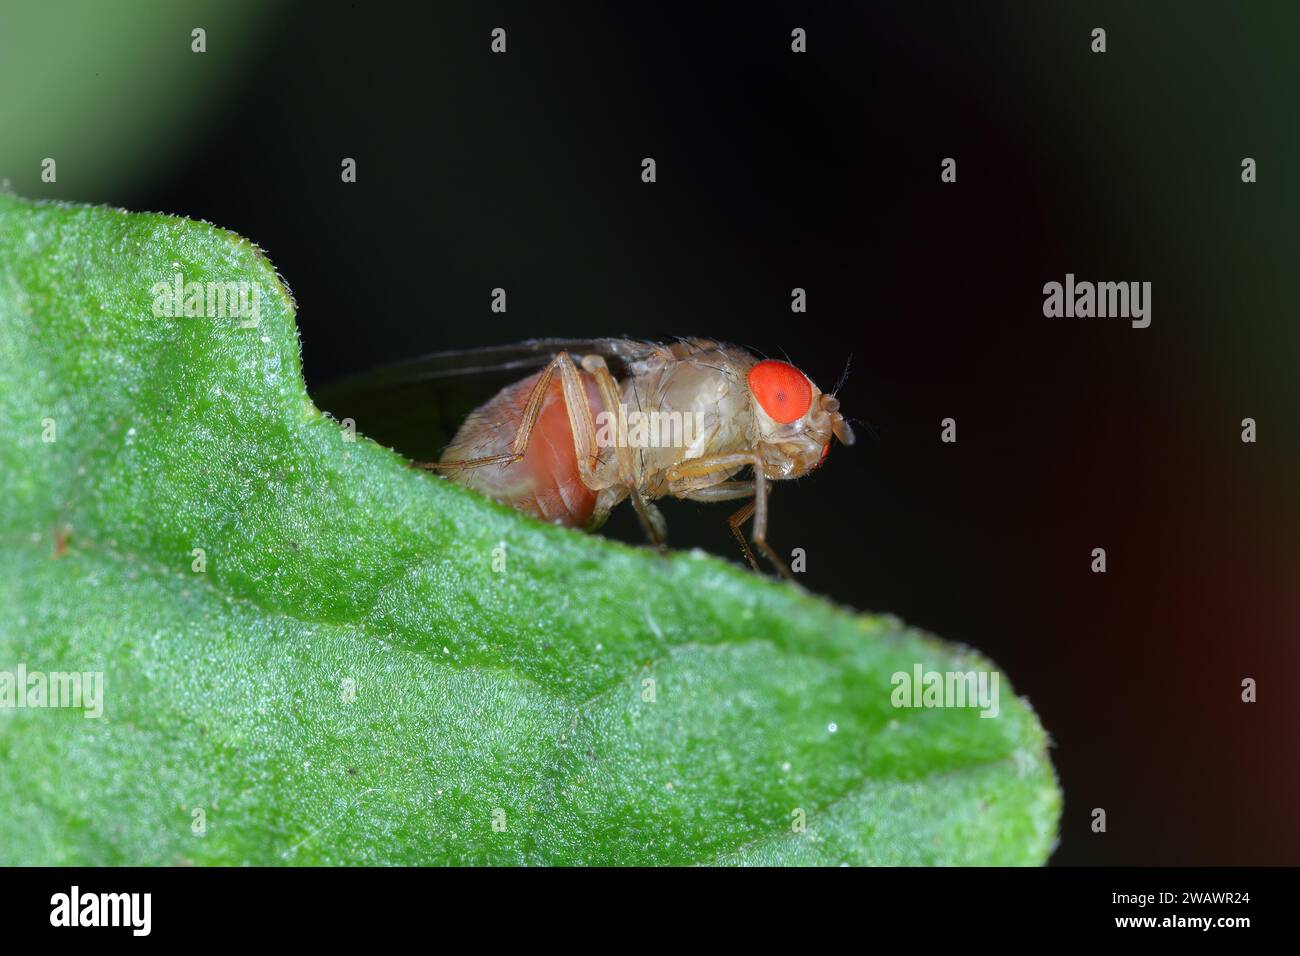 Cherry drosophila chiamata anche drosophila ad ala maculata (Drosophila suzukii). Parassita economicamente importante di vari frutti. Foto Stock